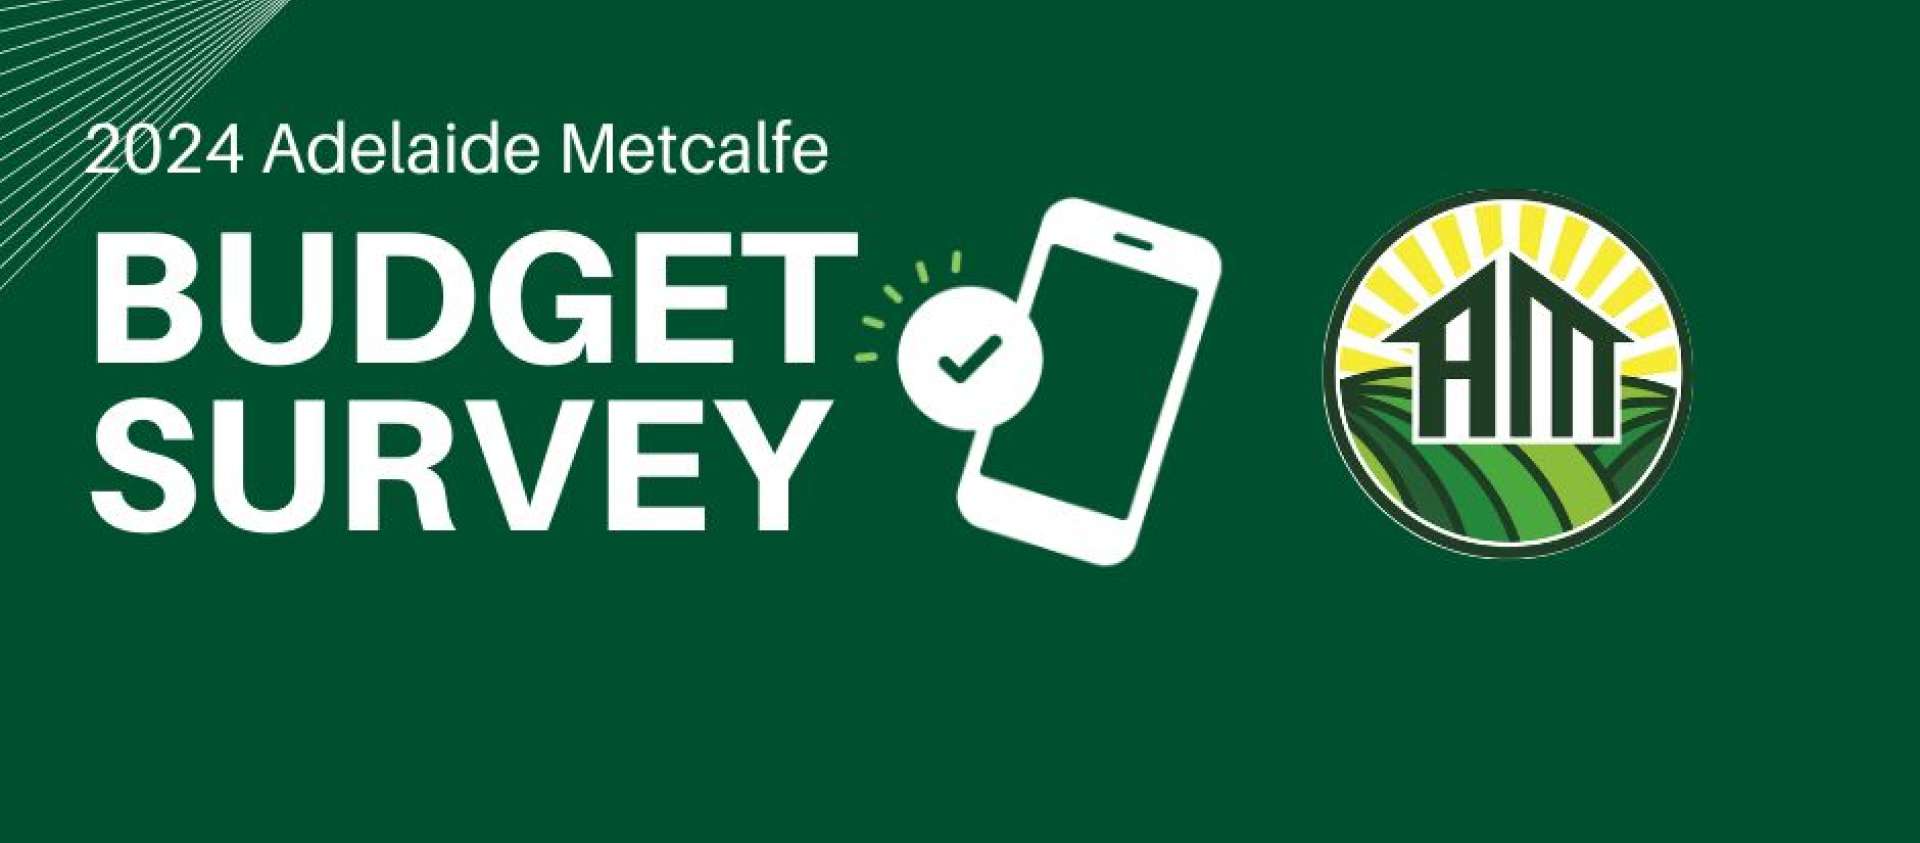 2024 Budget Survey Adelaide Metcalfe